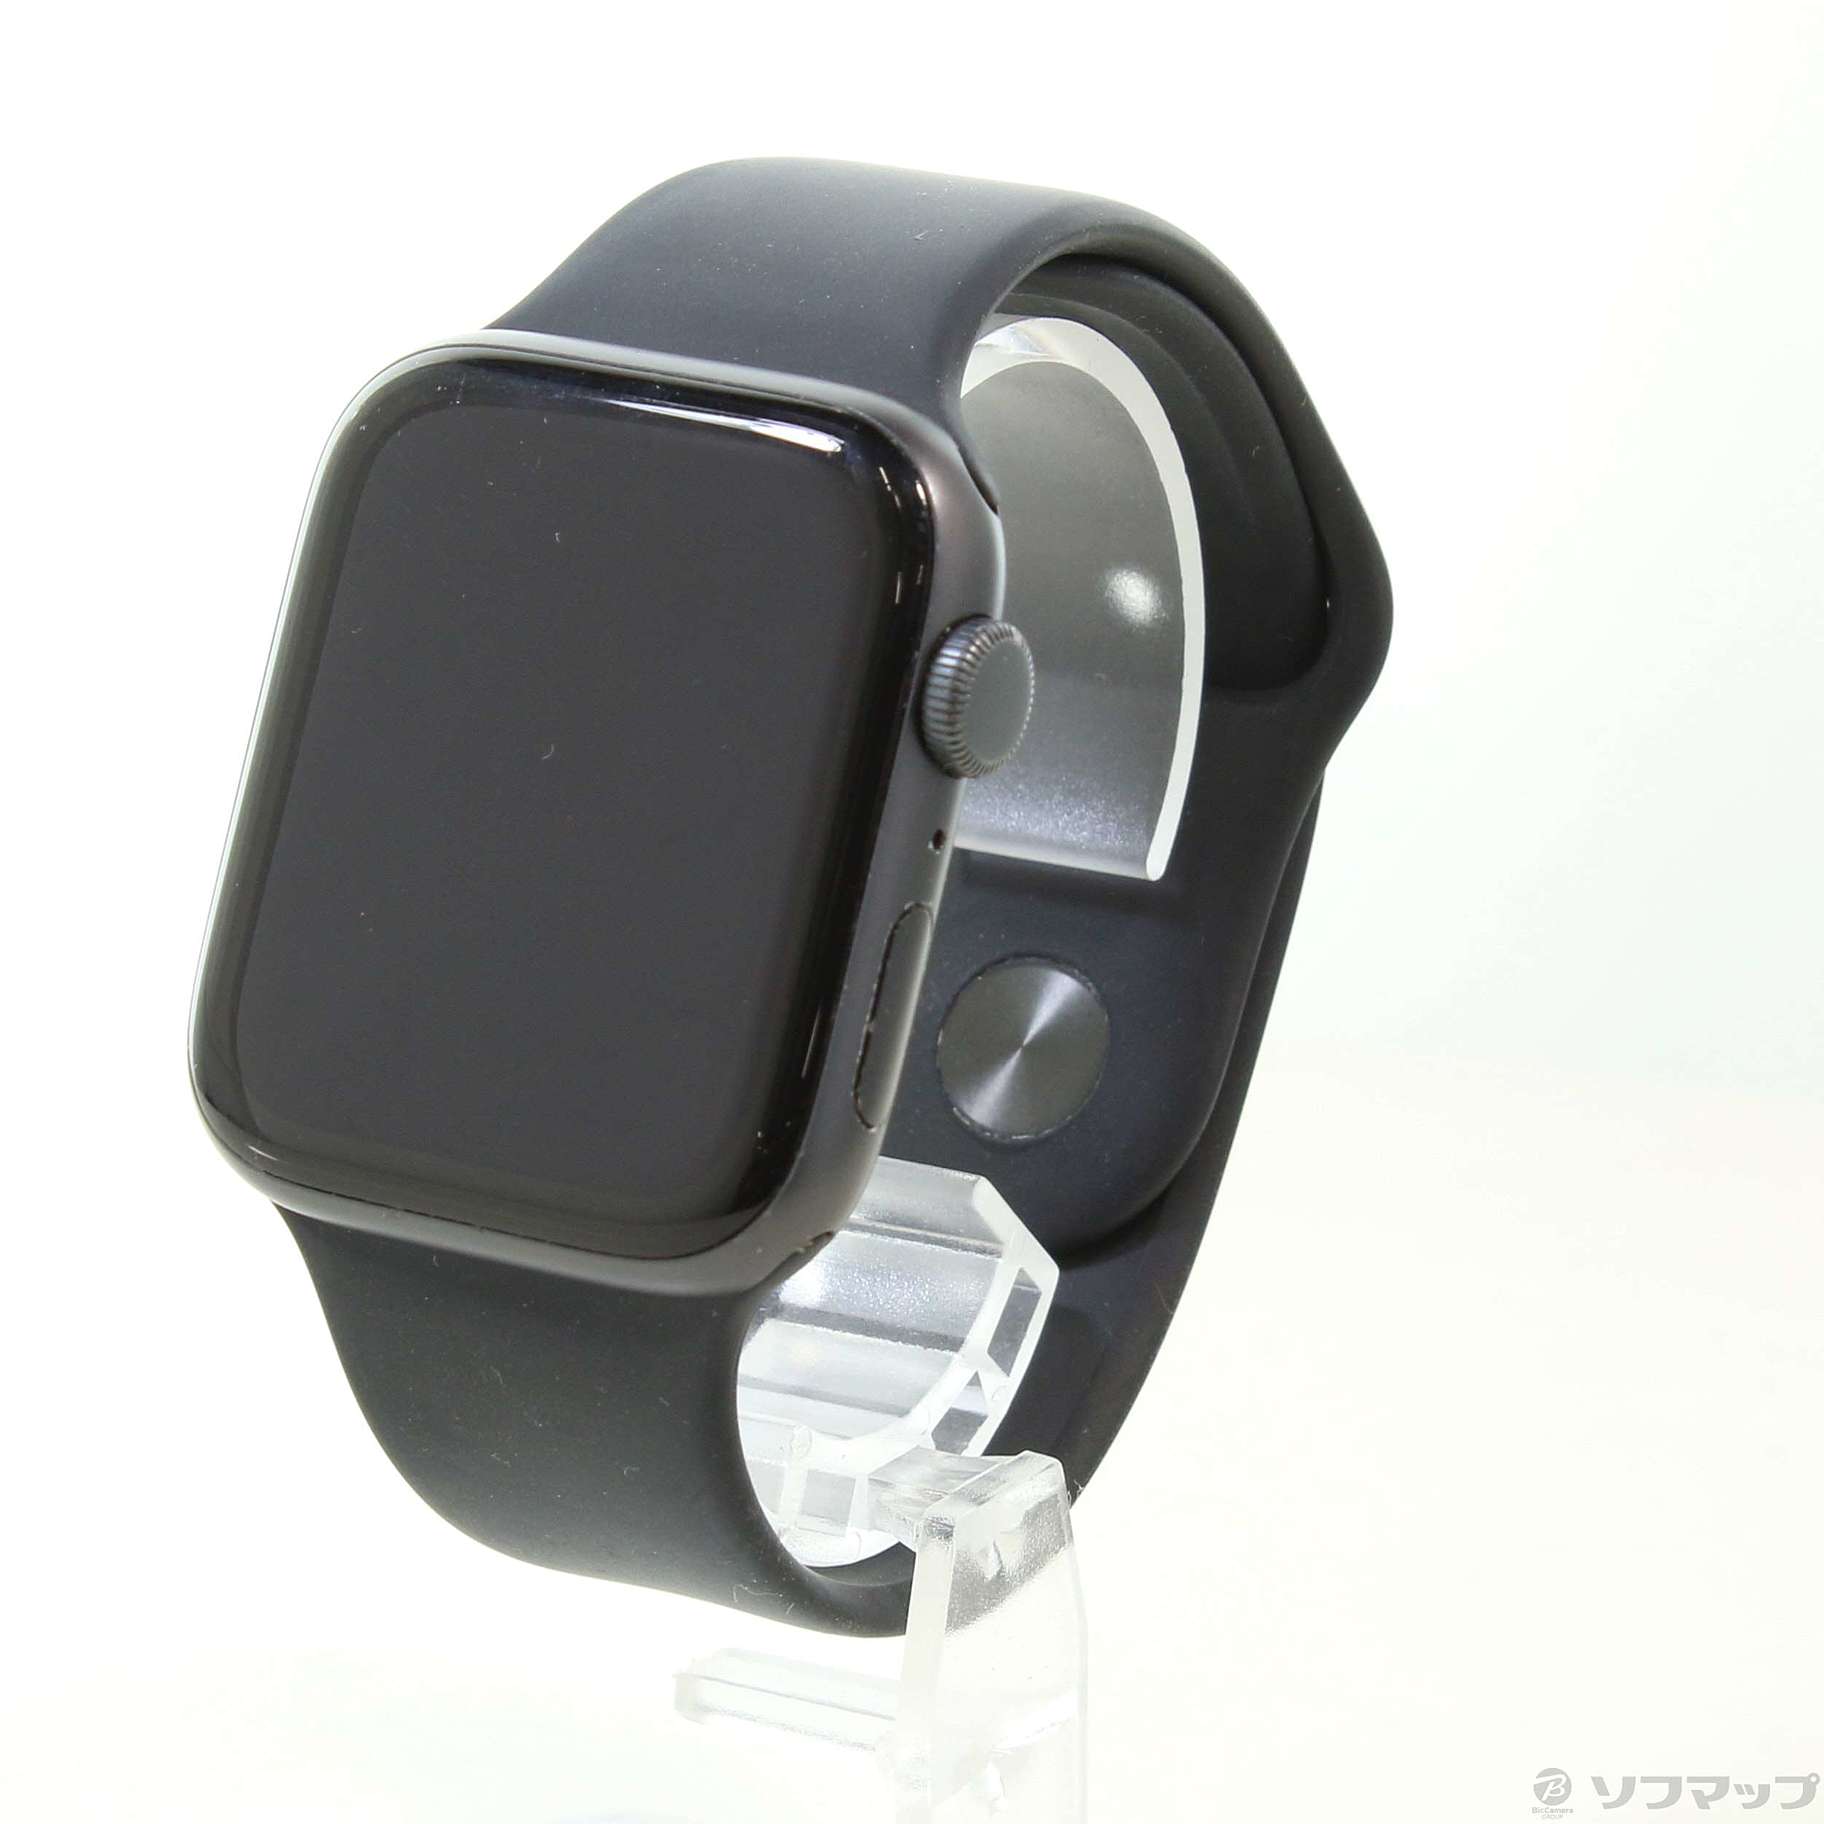 Apple Watch SE 第1世代 GPS 44mm スペースグレイアルミニウムケース ブラックスポーツバンド